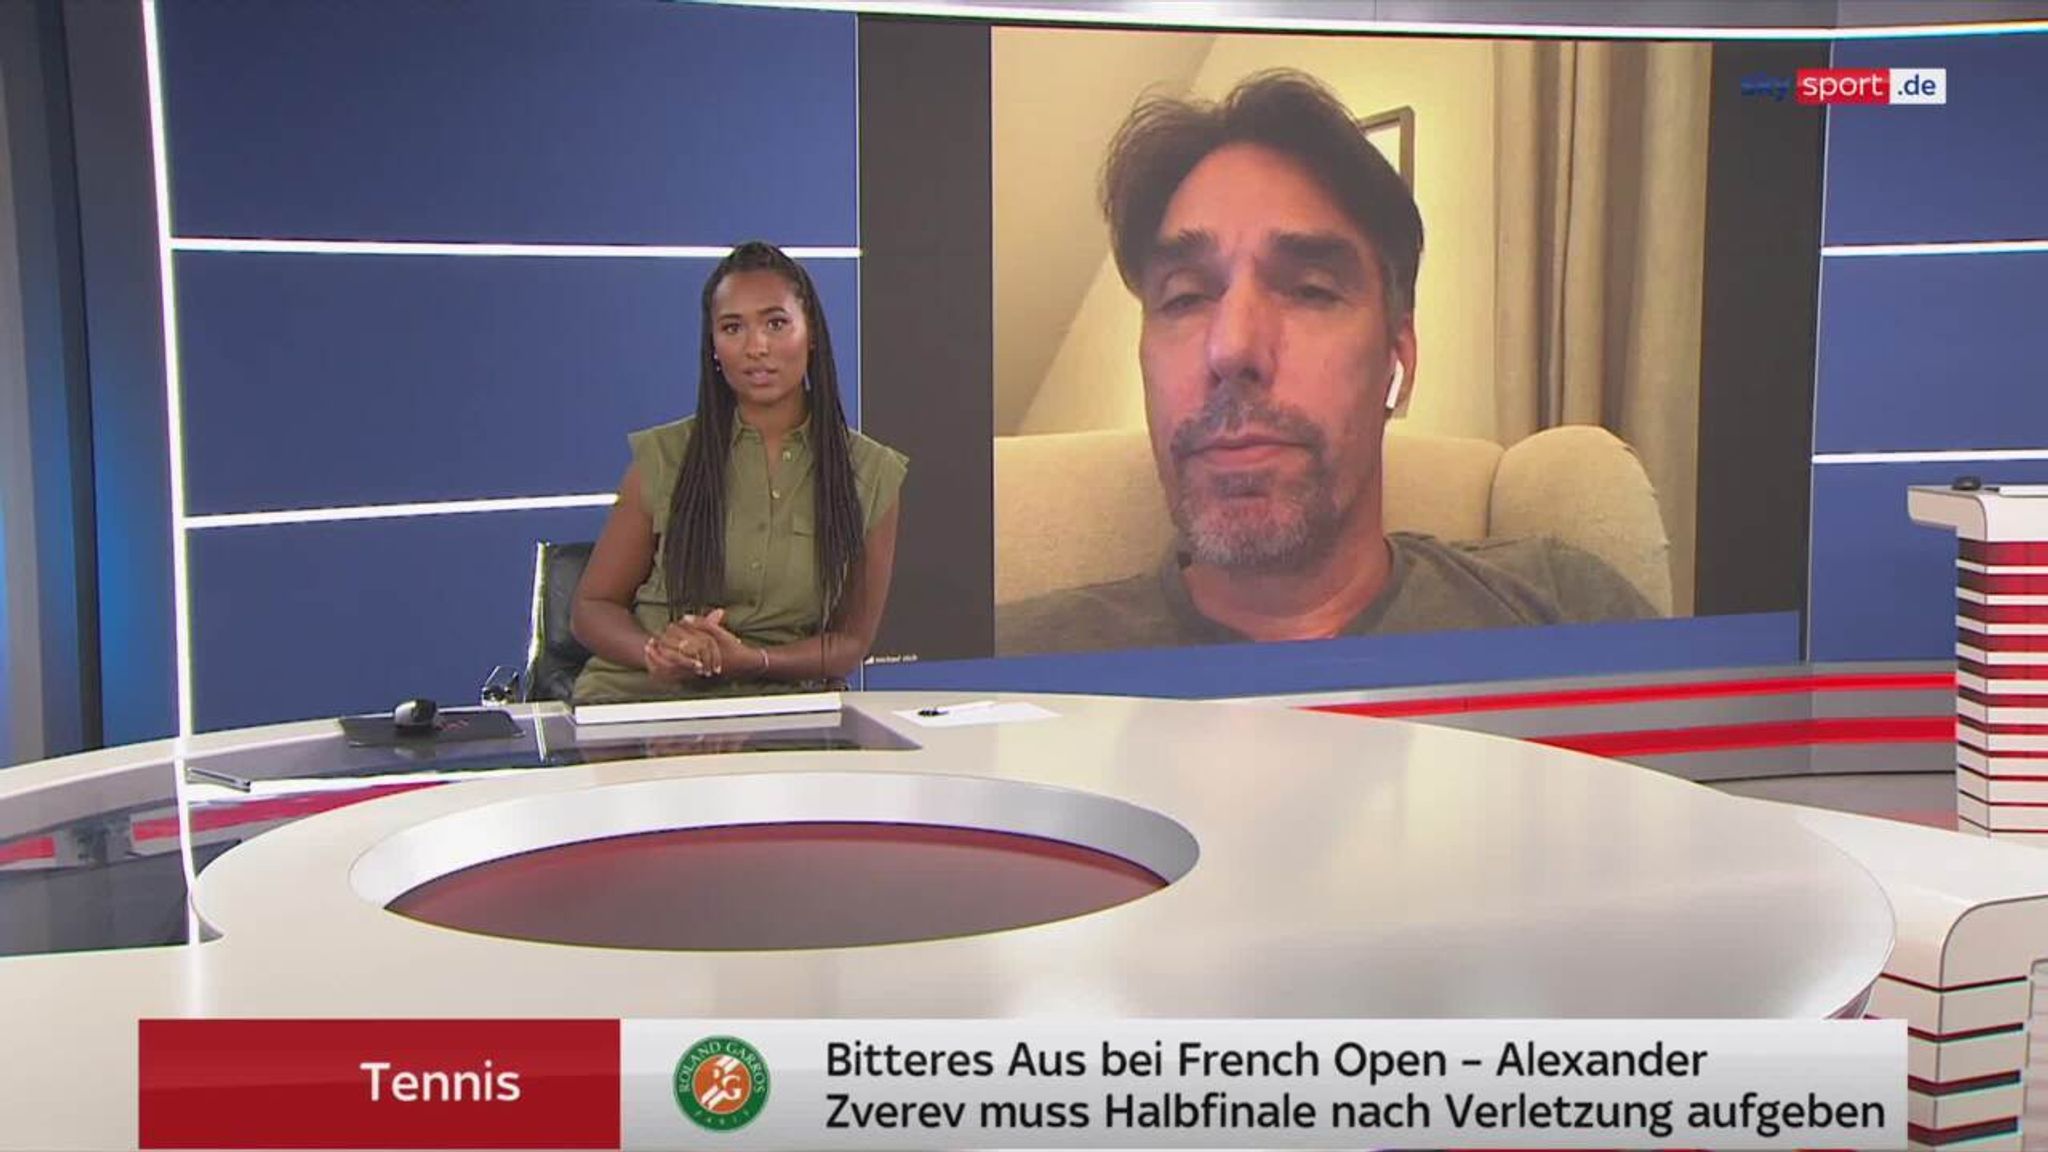 Tennis Michael Stich über Zverev-Aus nach Verletzung bei French Open Tennis News Sky Sport